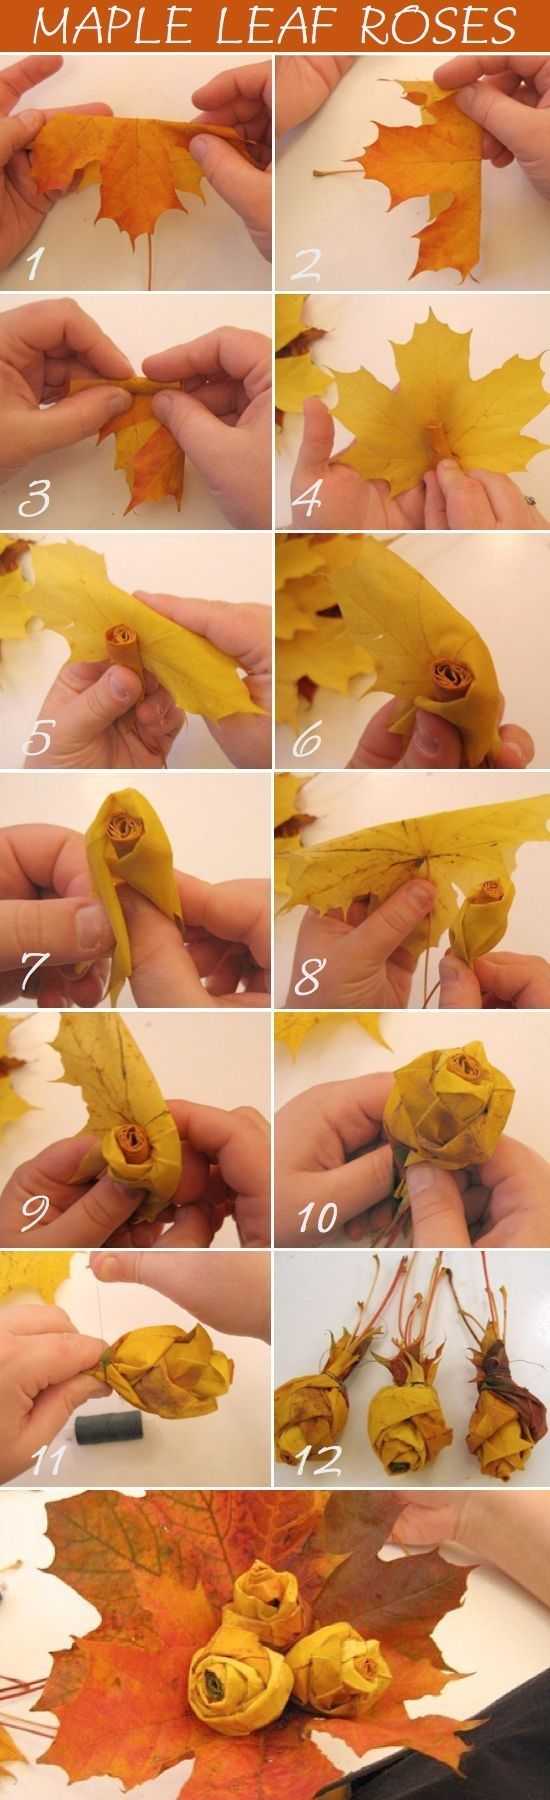 Как сделать цветы из кленовых листьев своими руками: простая инструкция от а до я